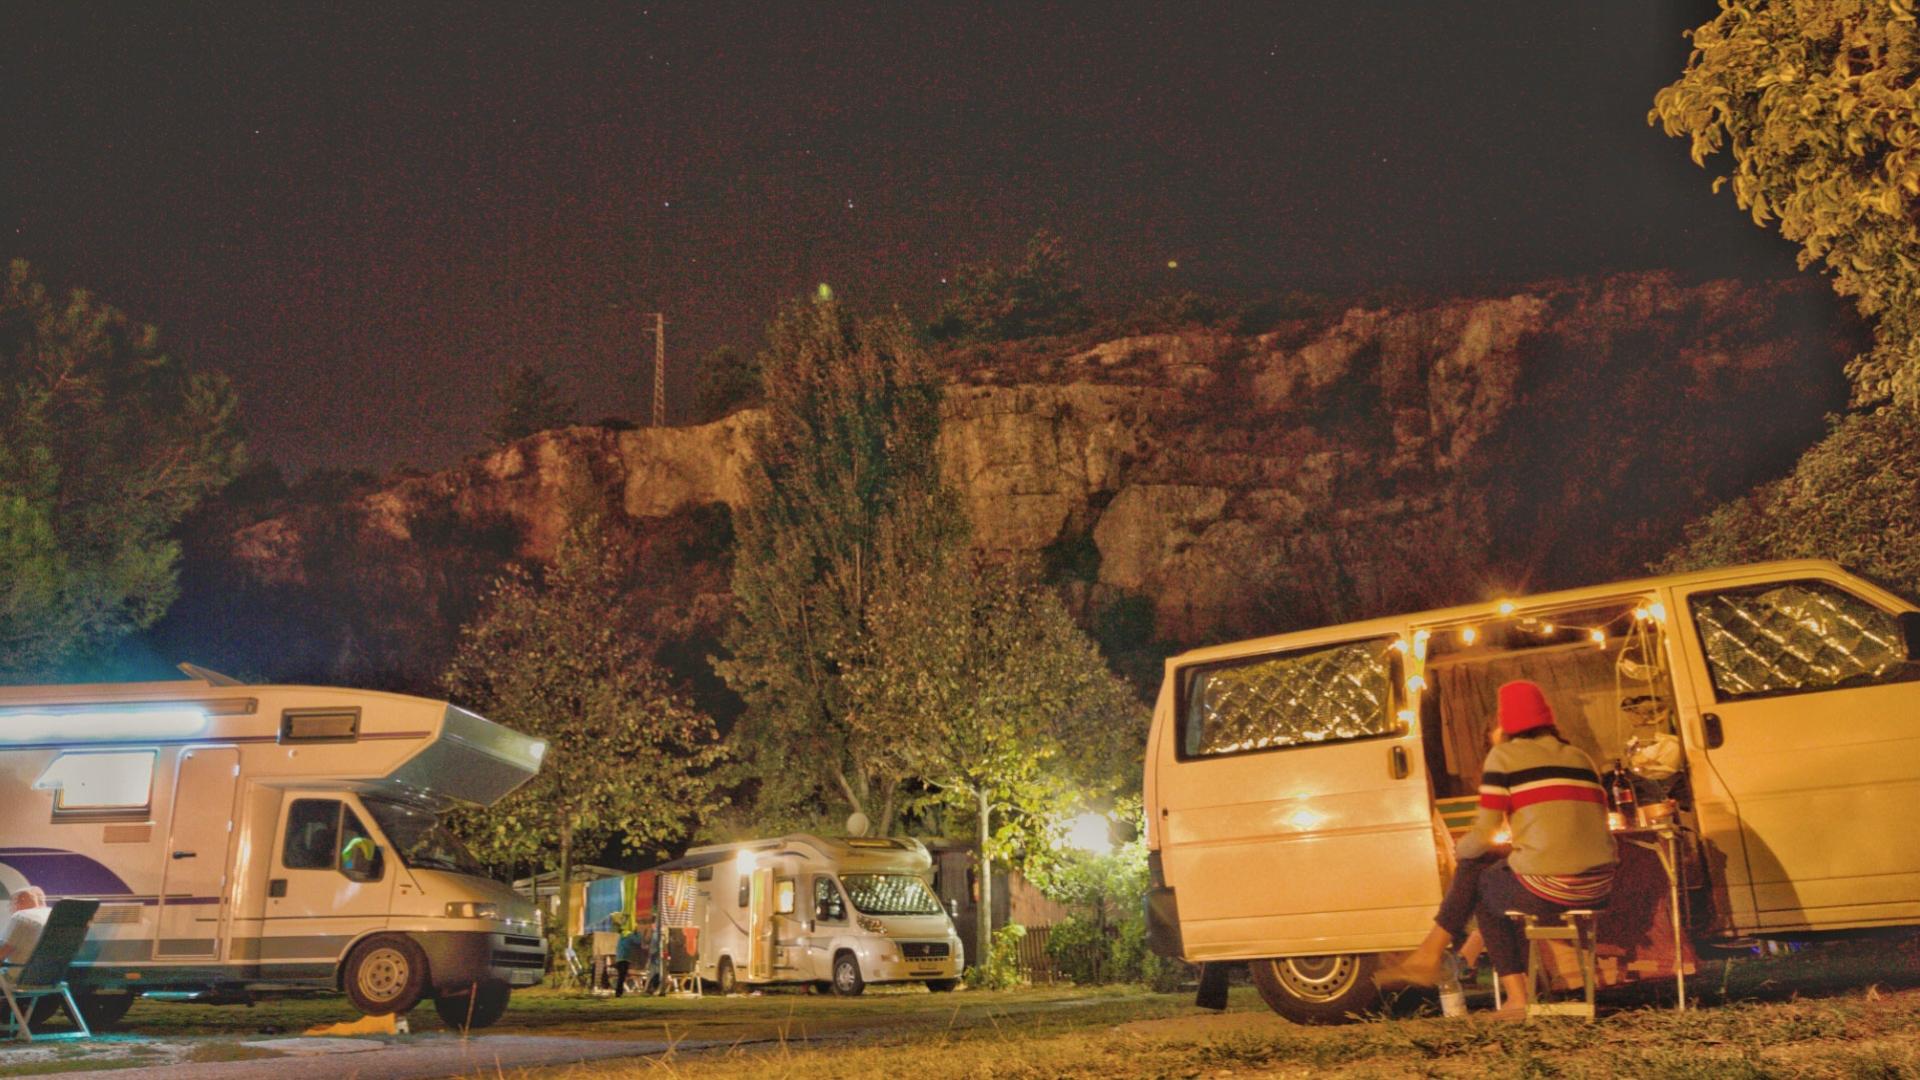 Campeggio notturno con camper e persona seduta vicino a un furgone illuminato.